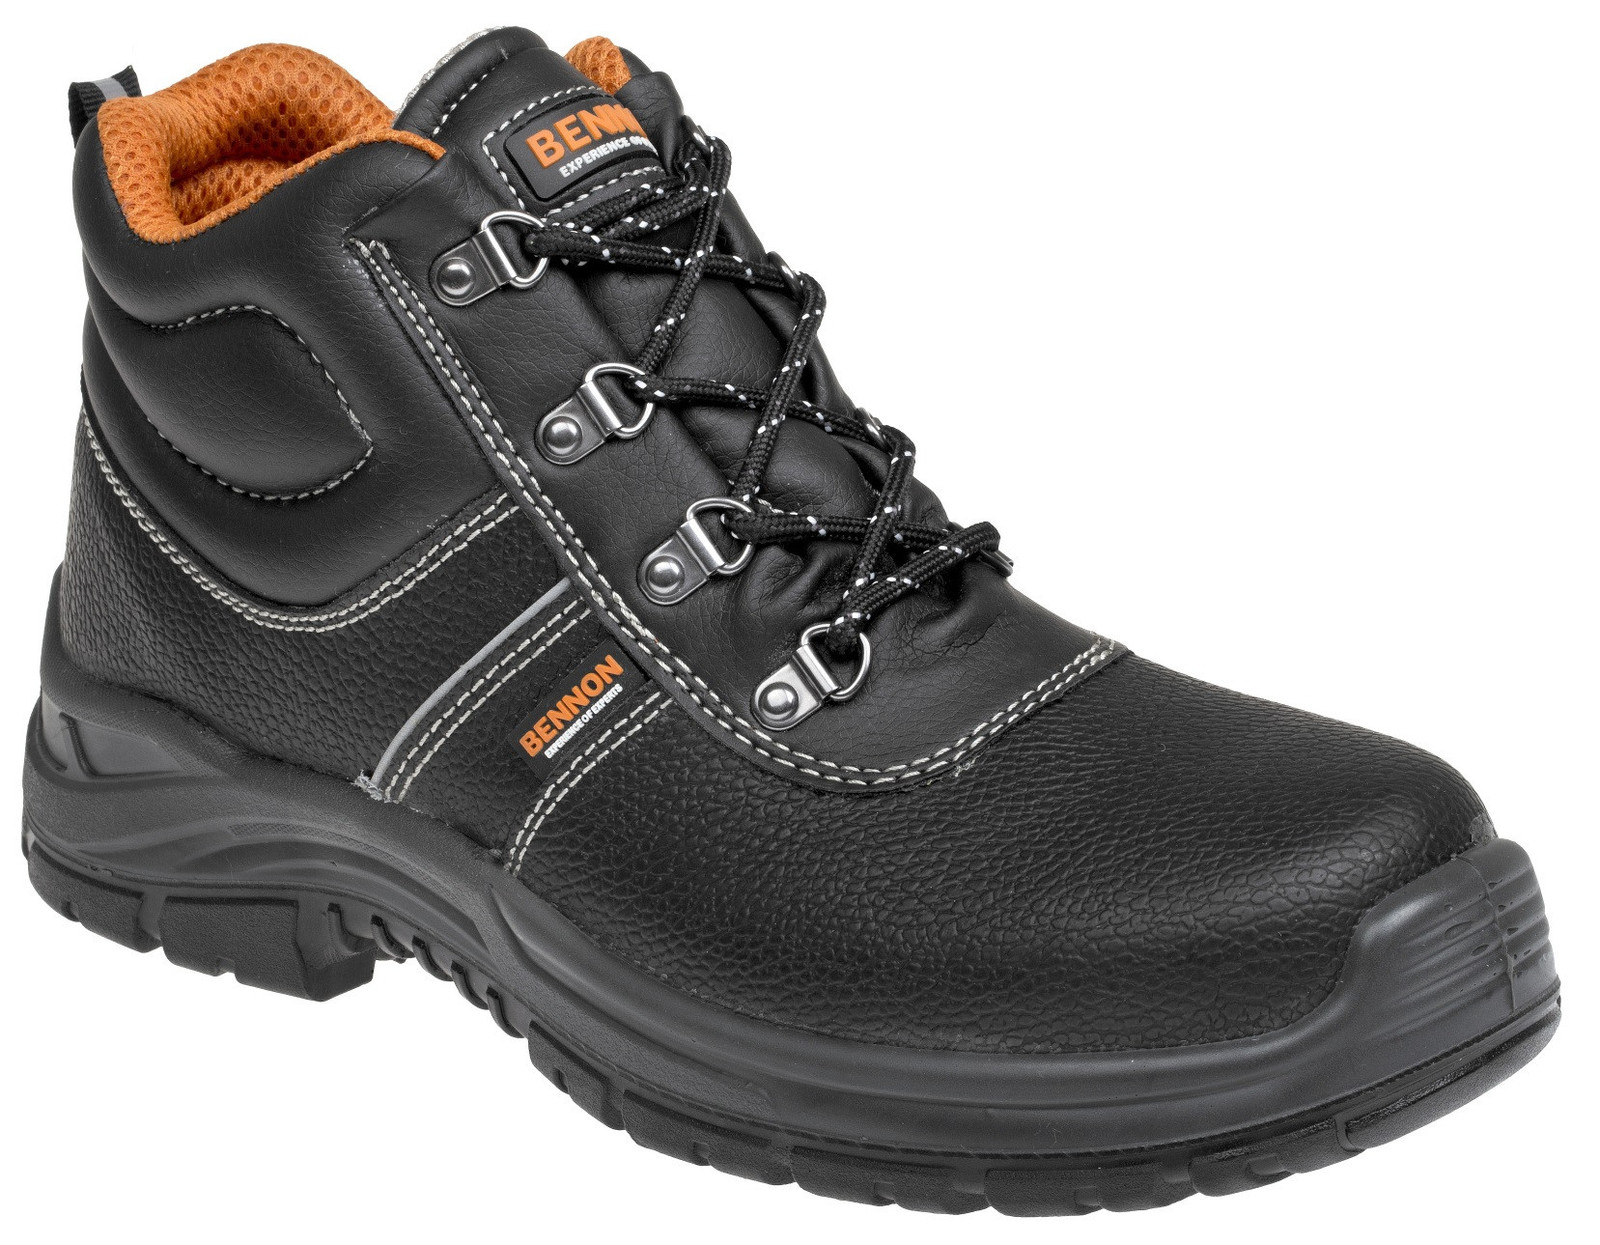 Bezpečnostná obuv Bennon Basic S3 - veľkosť: 41, farba: čierna